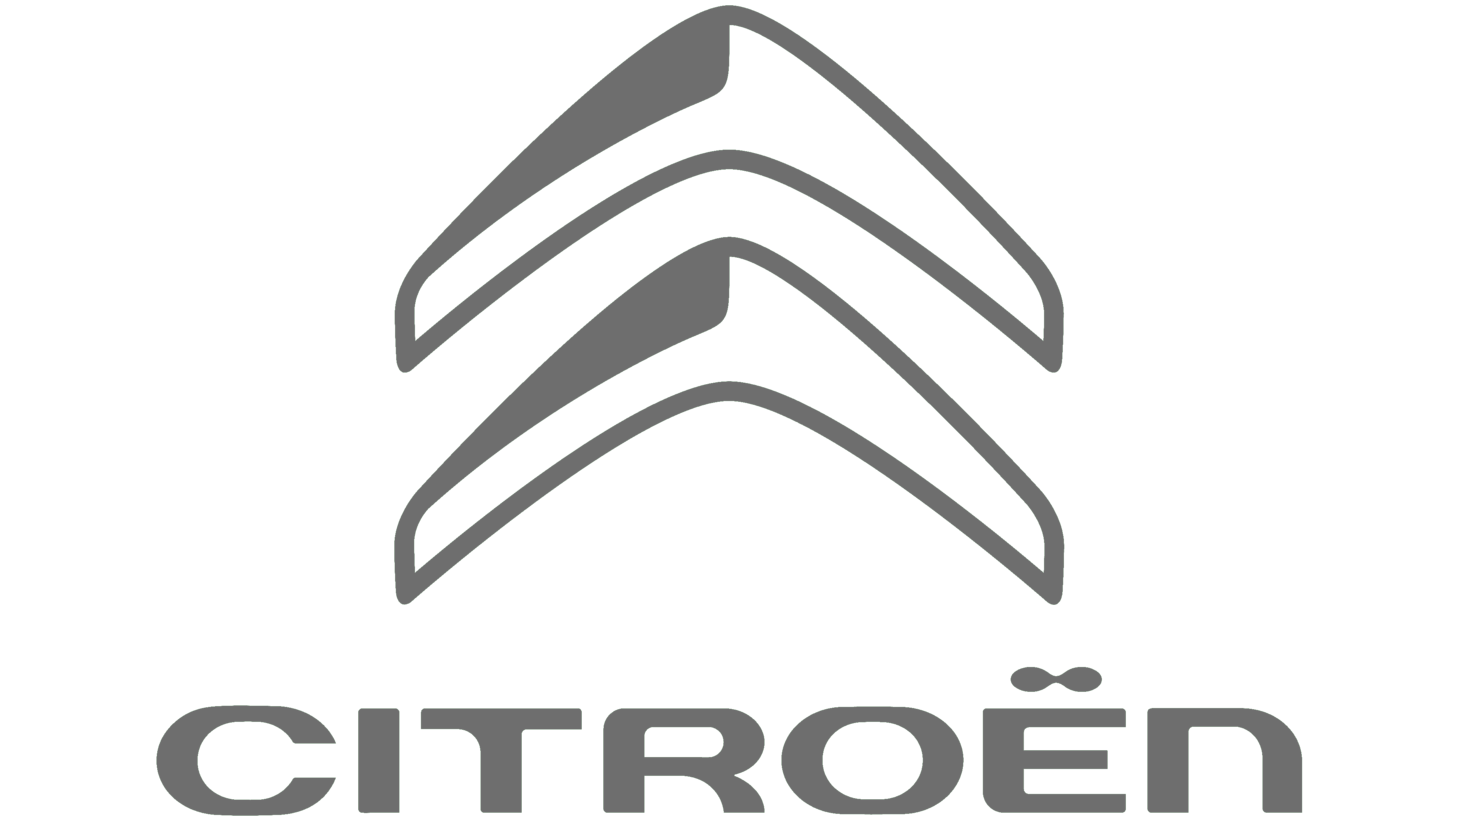 Citroen sign 2016 present